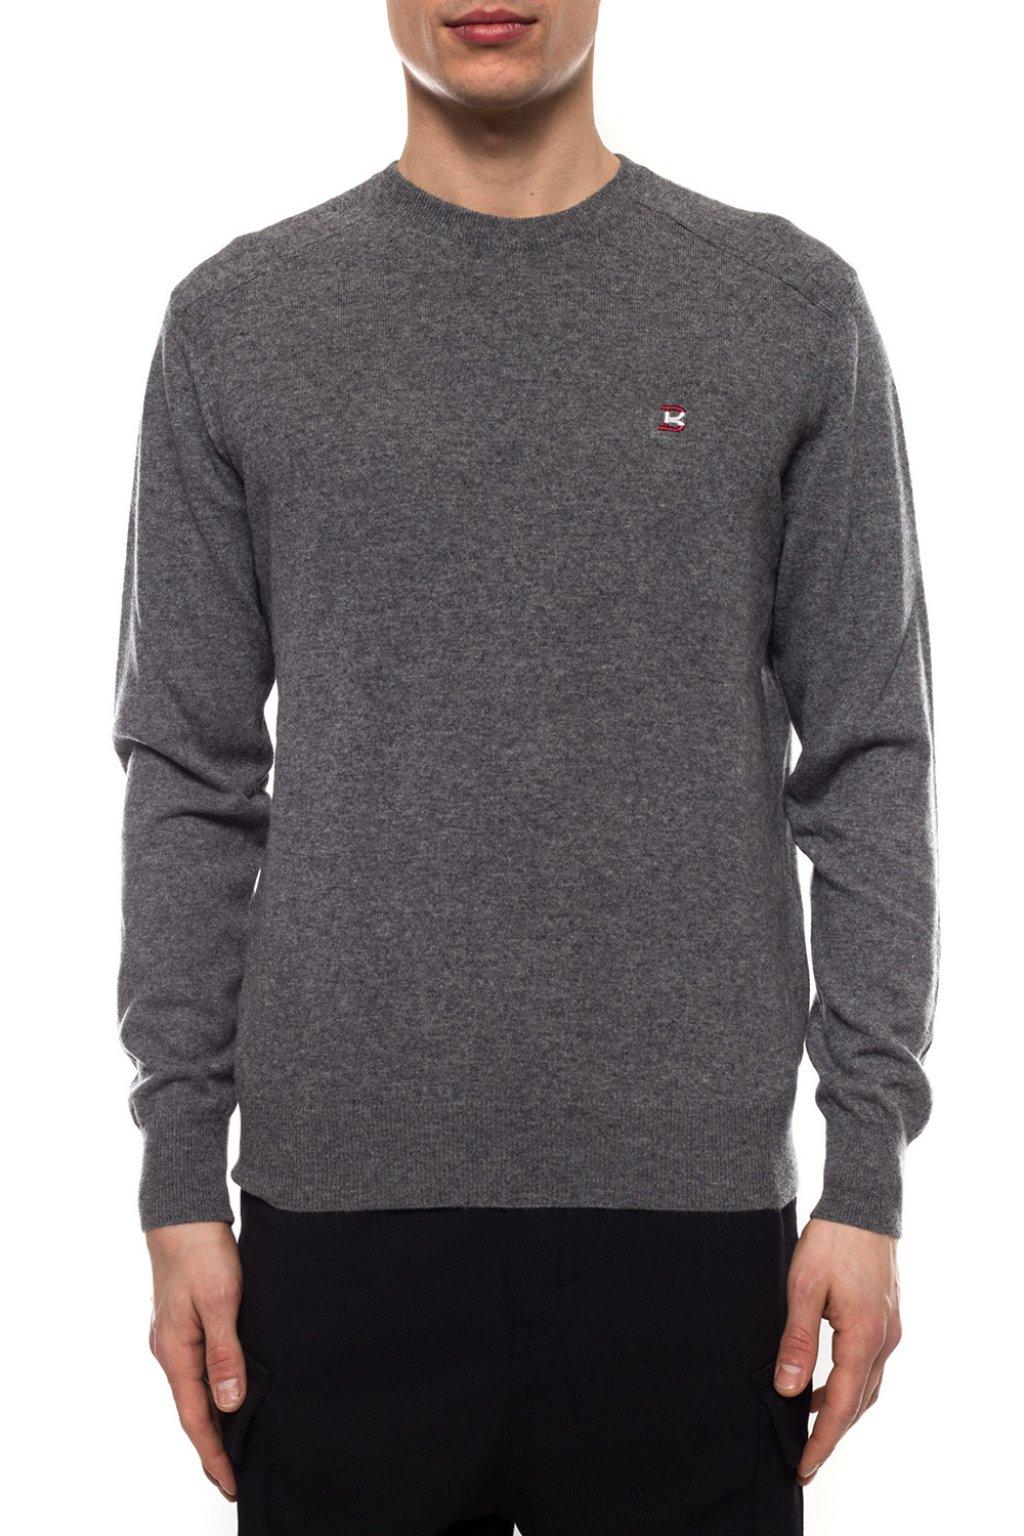 Bally Wool Logo Sweater Grey in Gray for Men - Lyst